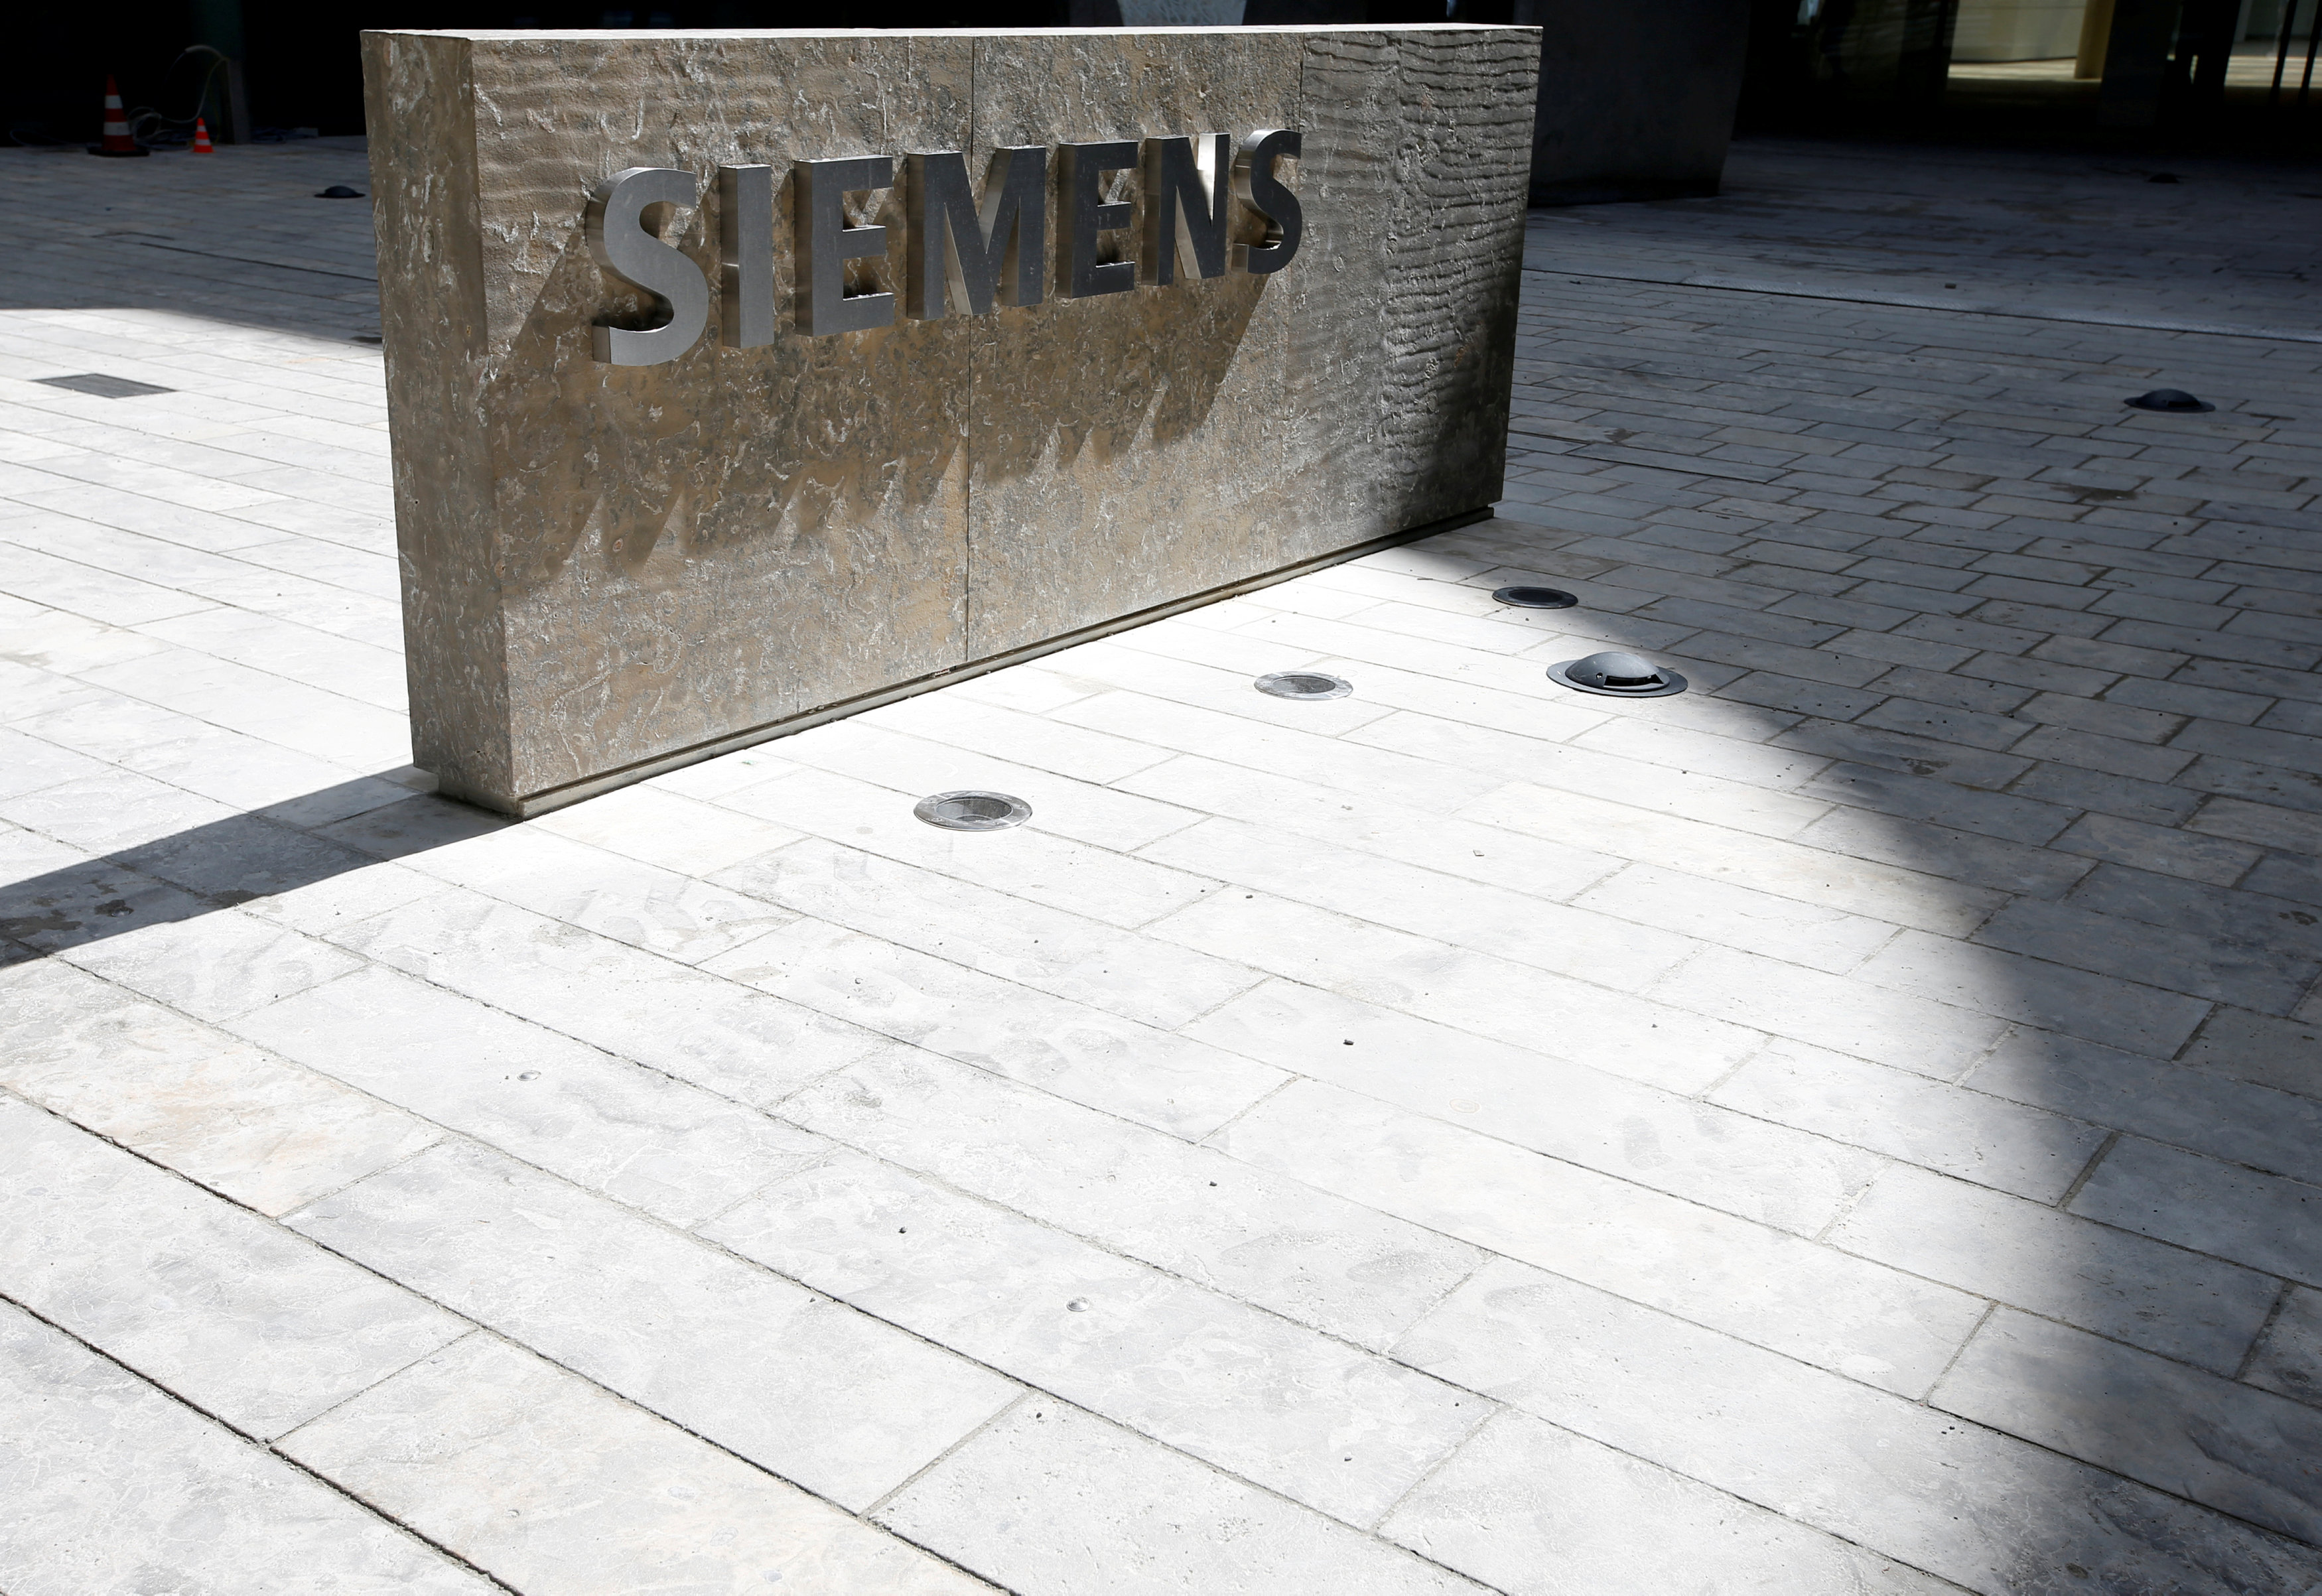 Στις 24 Φεβρουαρίου ξεκινά η δίκη για την υπόθεση Siemens